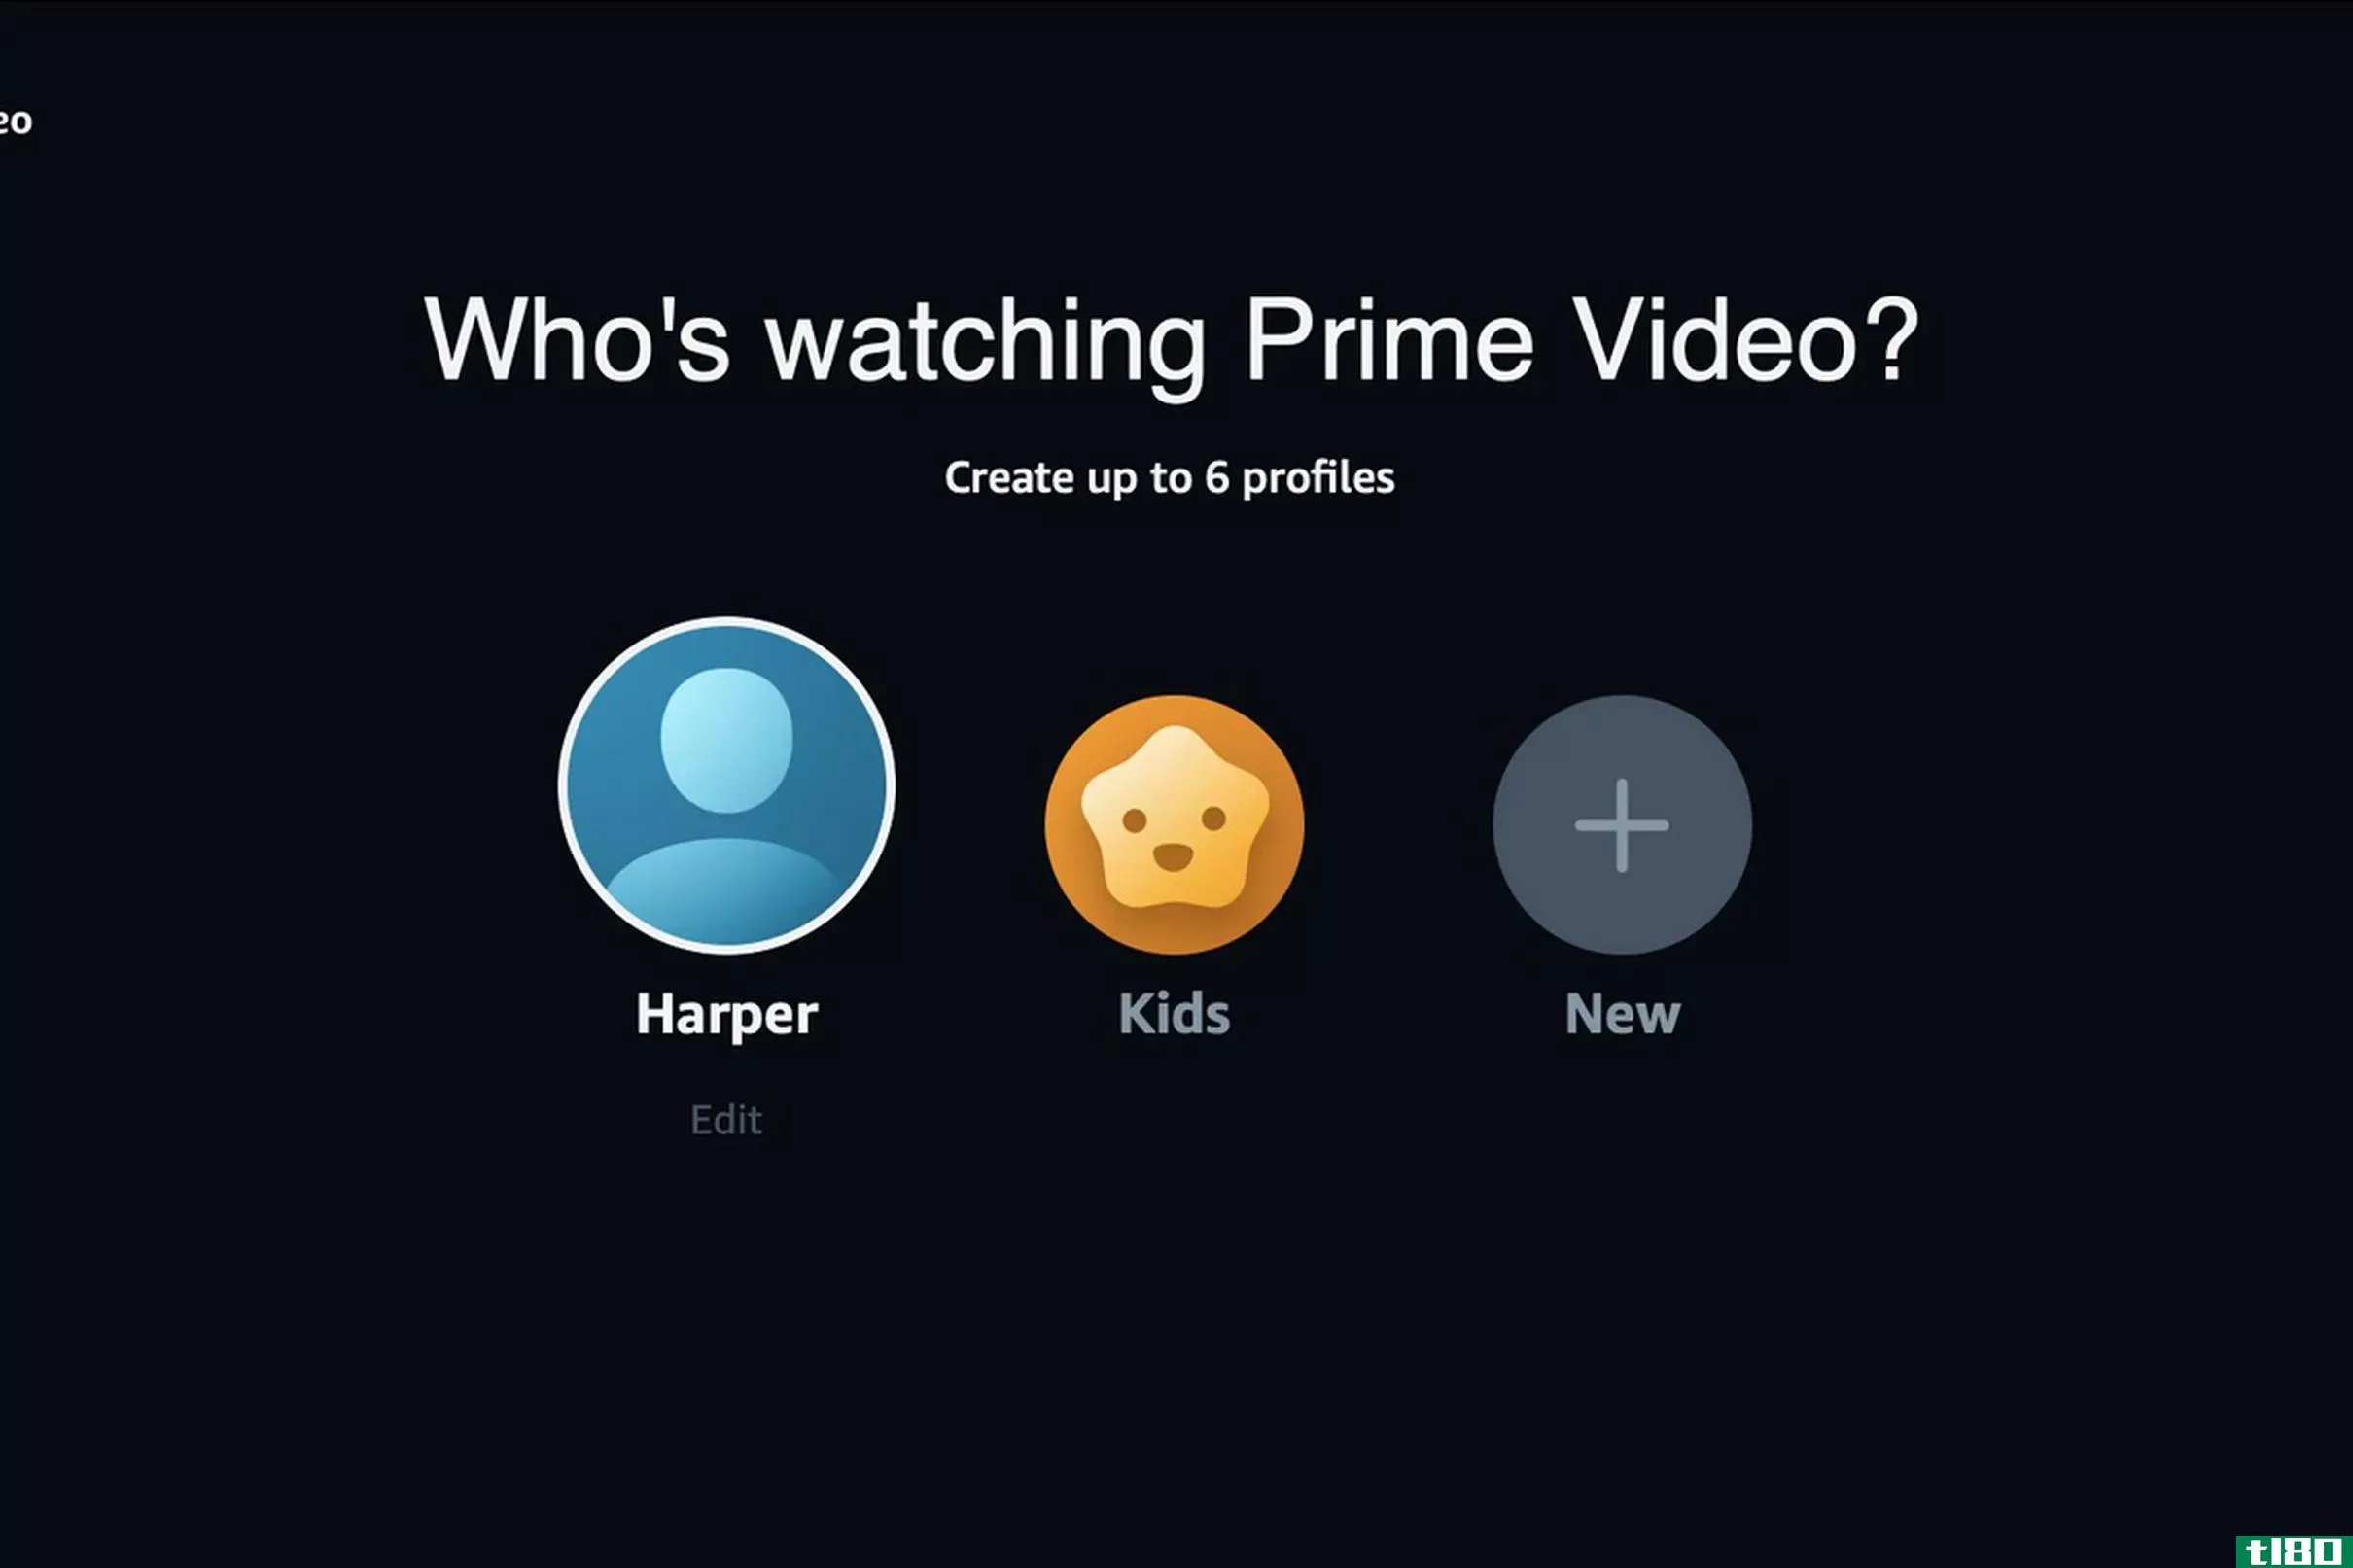 amazon prime video正在推出个人用户档案